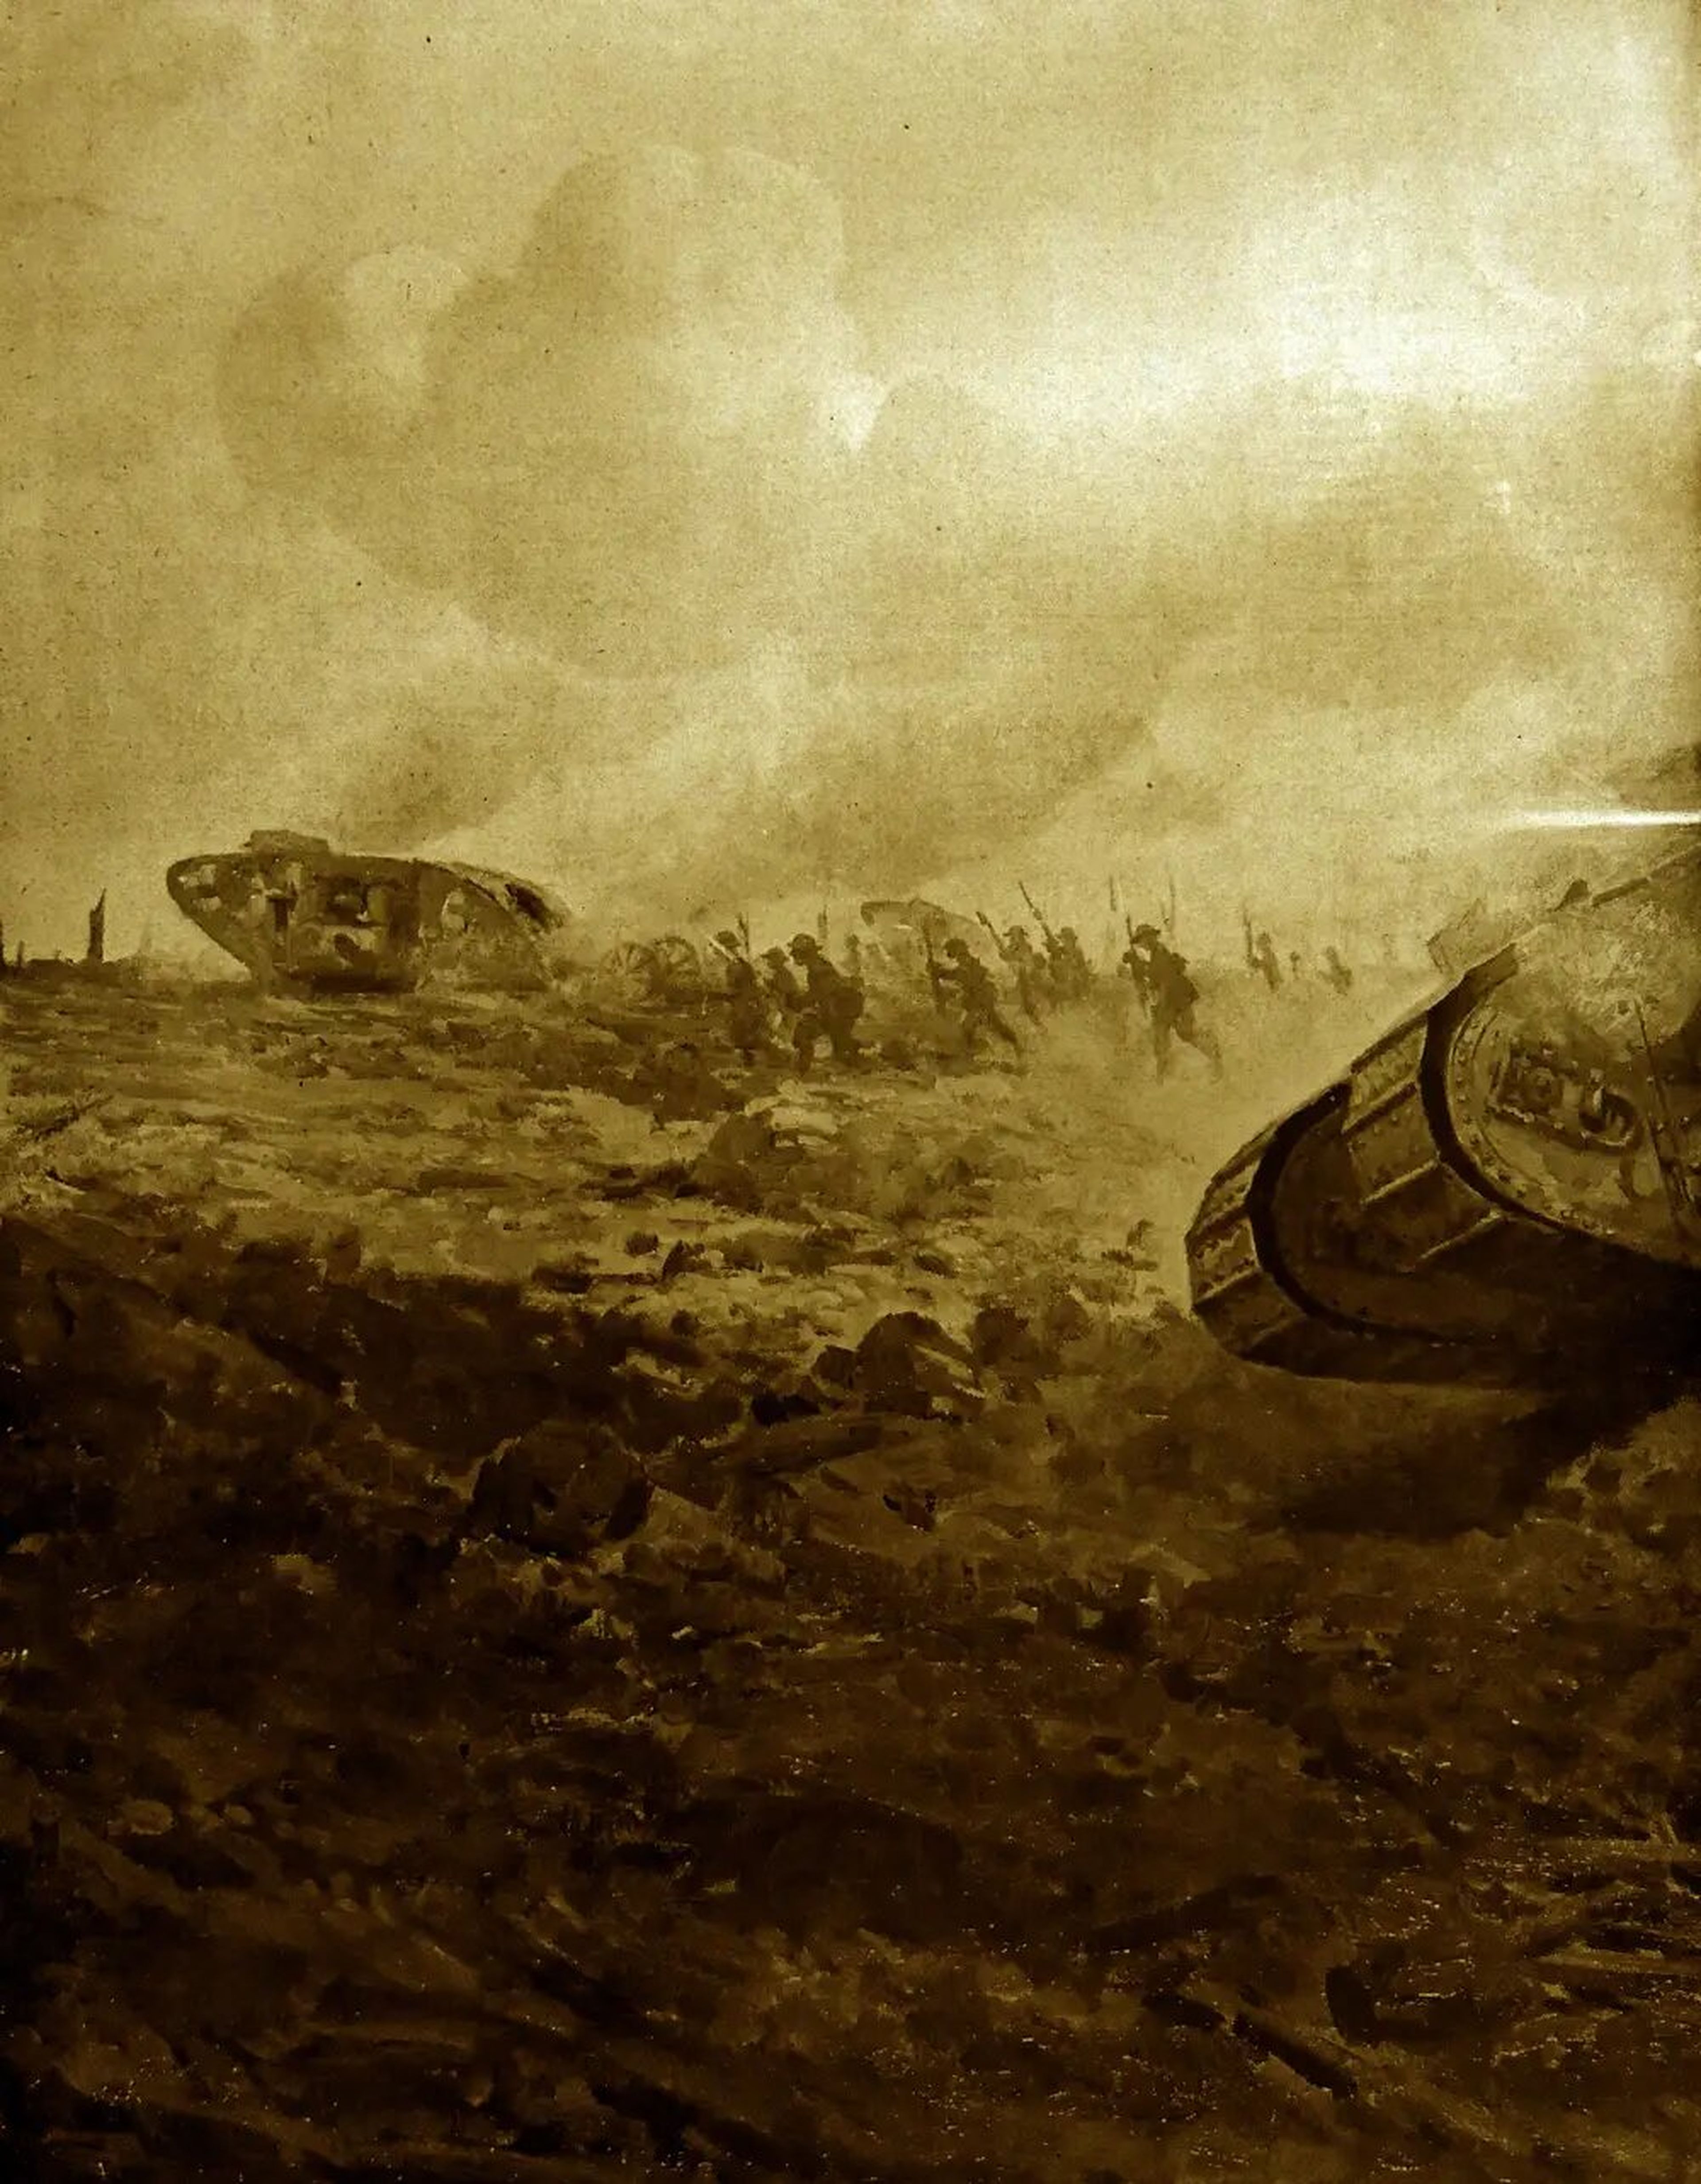 "Los tanques se utilizaron por primera vez en acción en el campo de batalla del Somme el 15 de septiembre de 1916 durante la Primera Guerra Mundial.